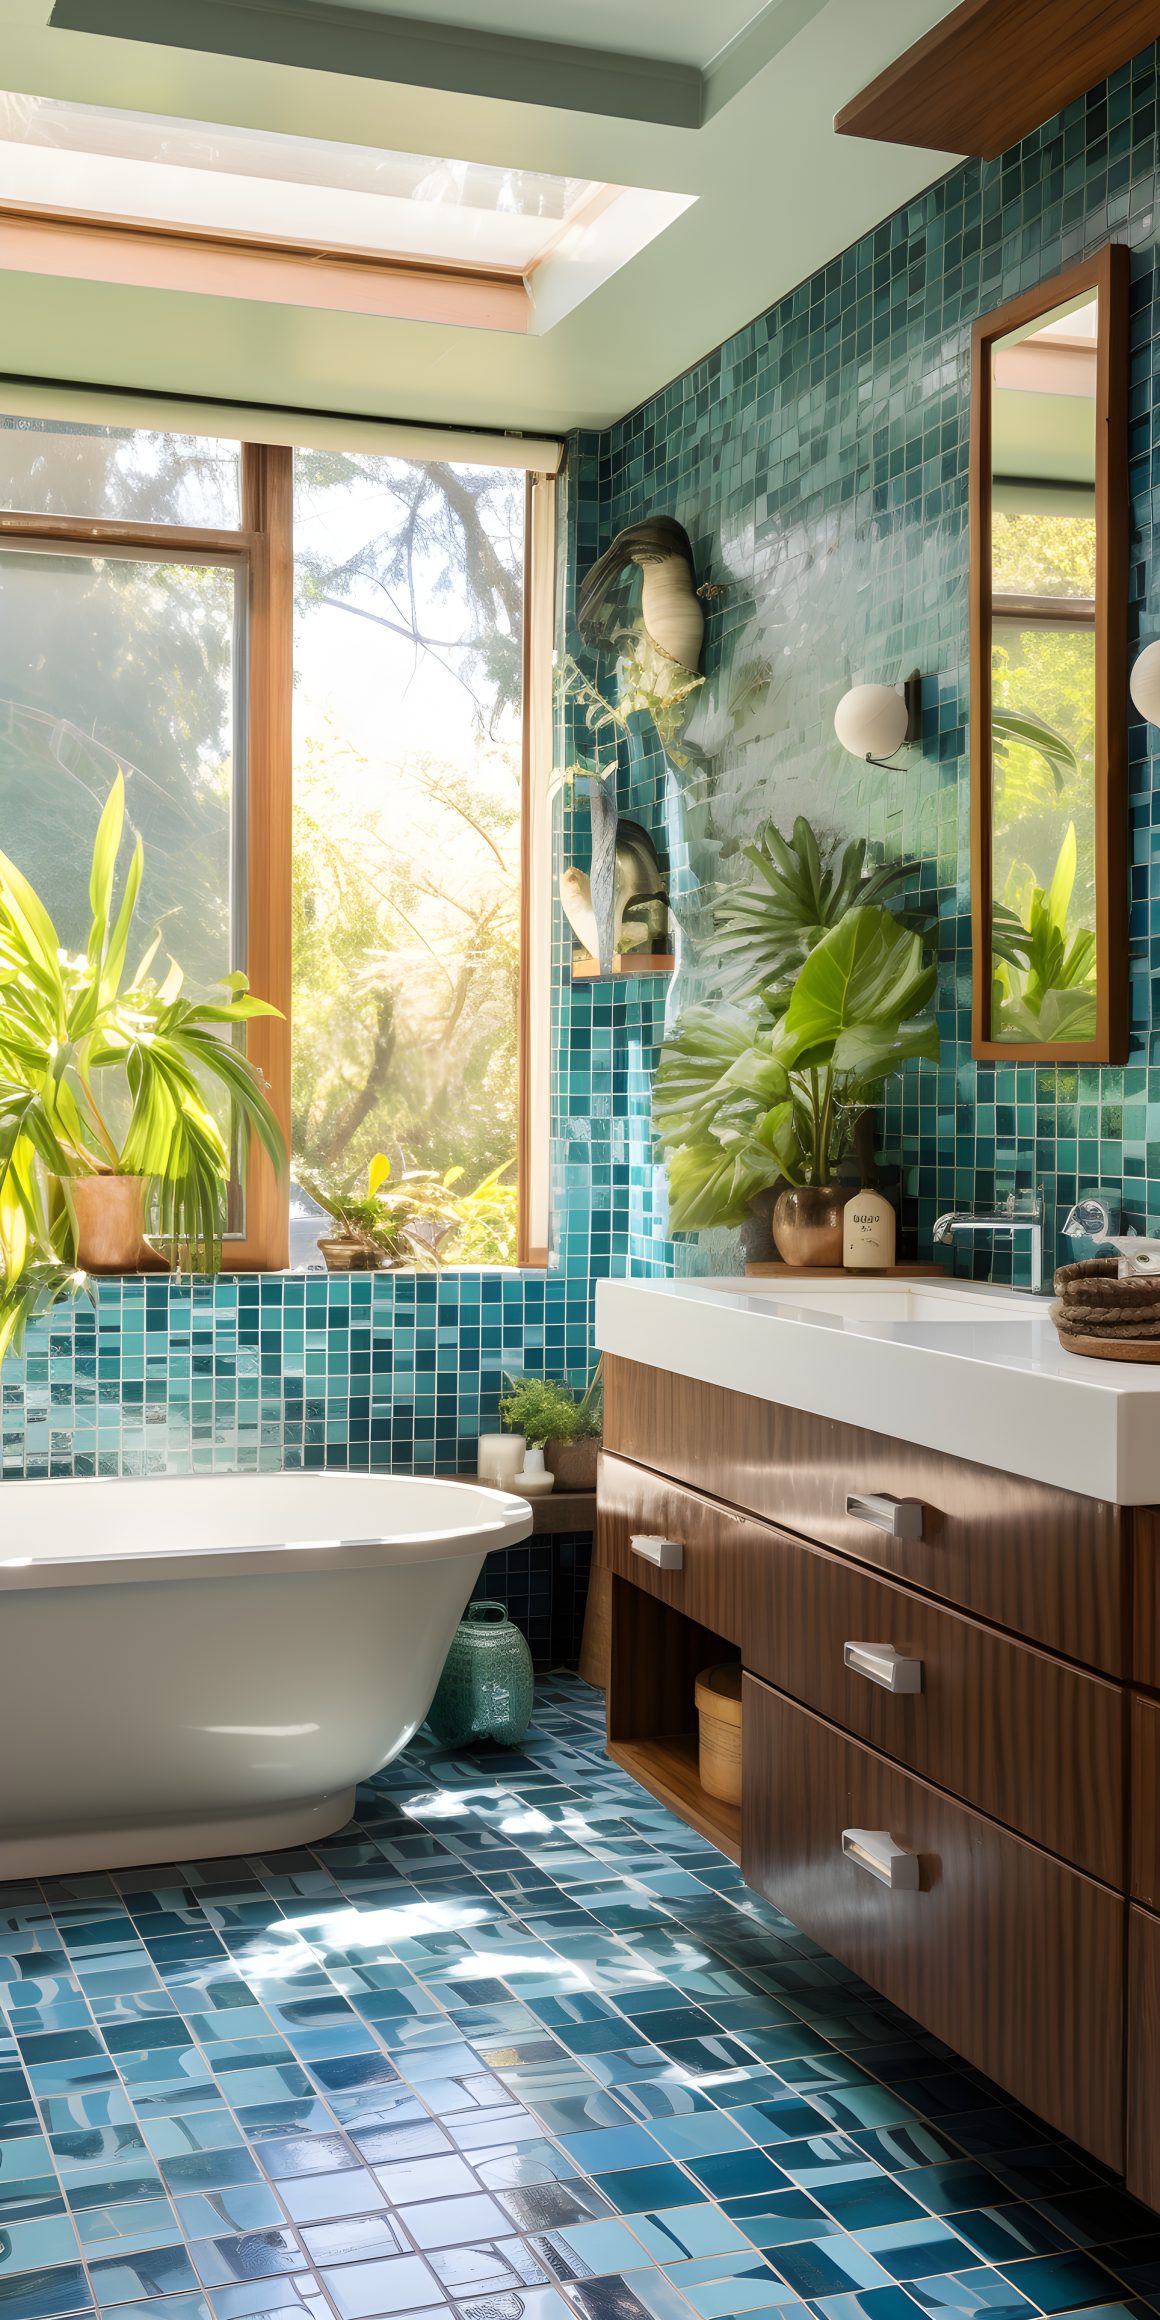 une salle de bain carrelée en bleu avec une grande fenêtre, des plantes vertes, et une baignoire blanche, créant une ambiance lumineuse et naturelle